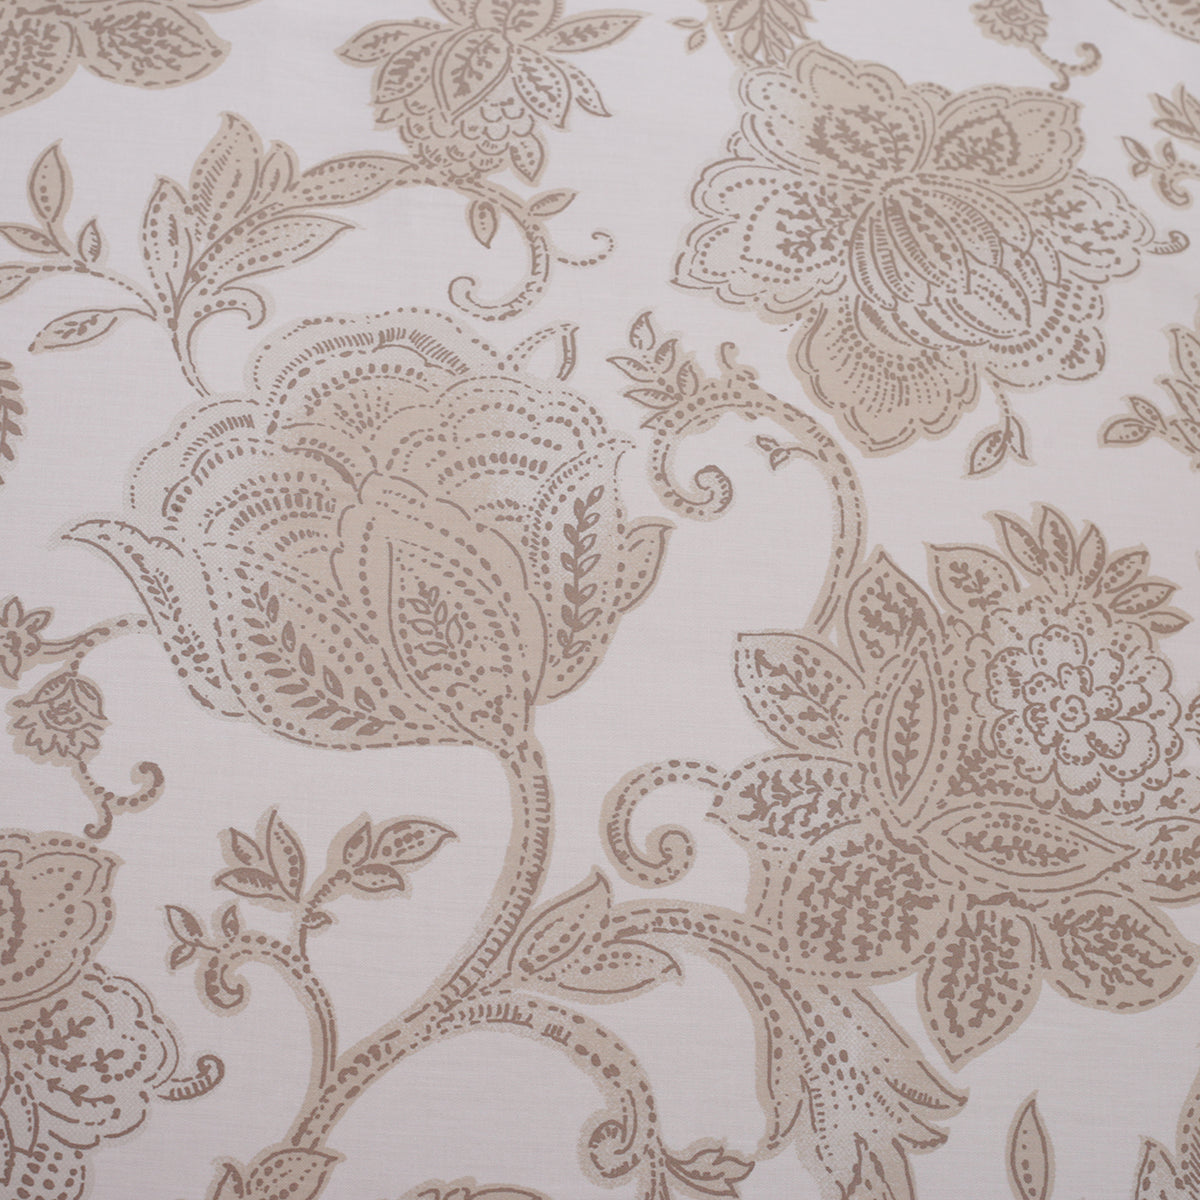 Art Nouveau Mabel Neutral Plain & Printed Reversible 100% Cotton Super Soft Duvet Cover with Pillow Case